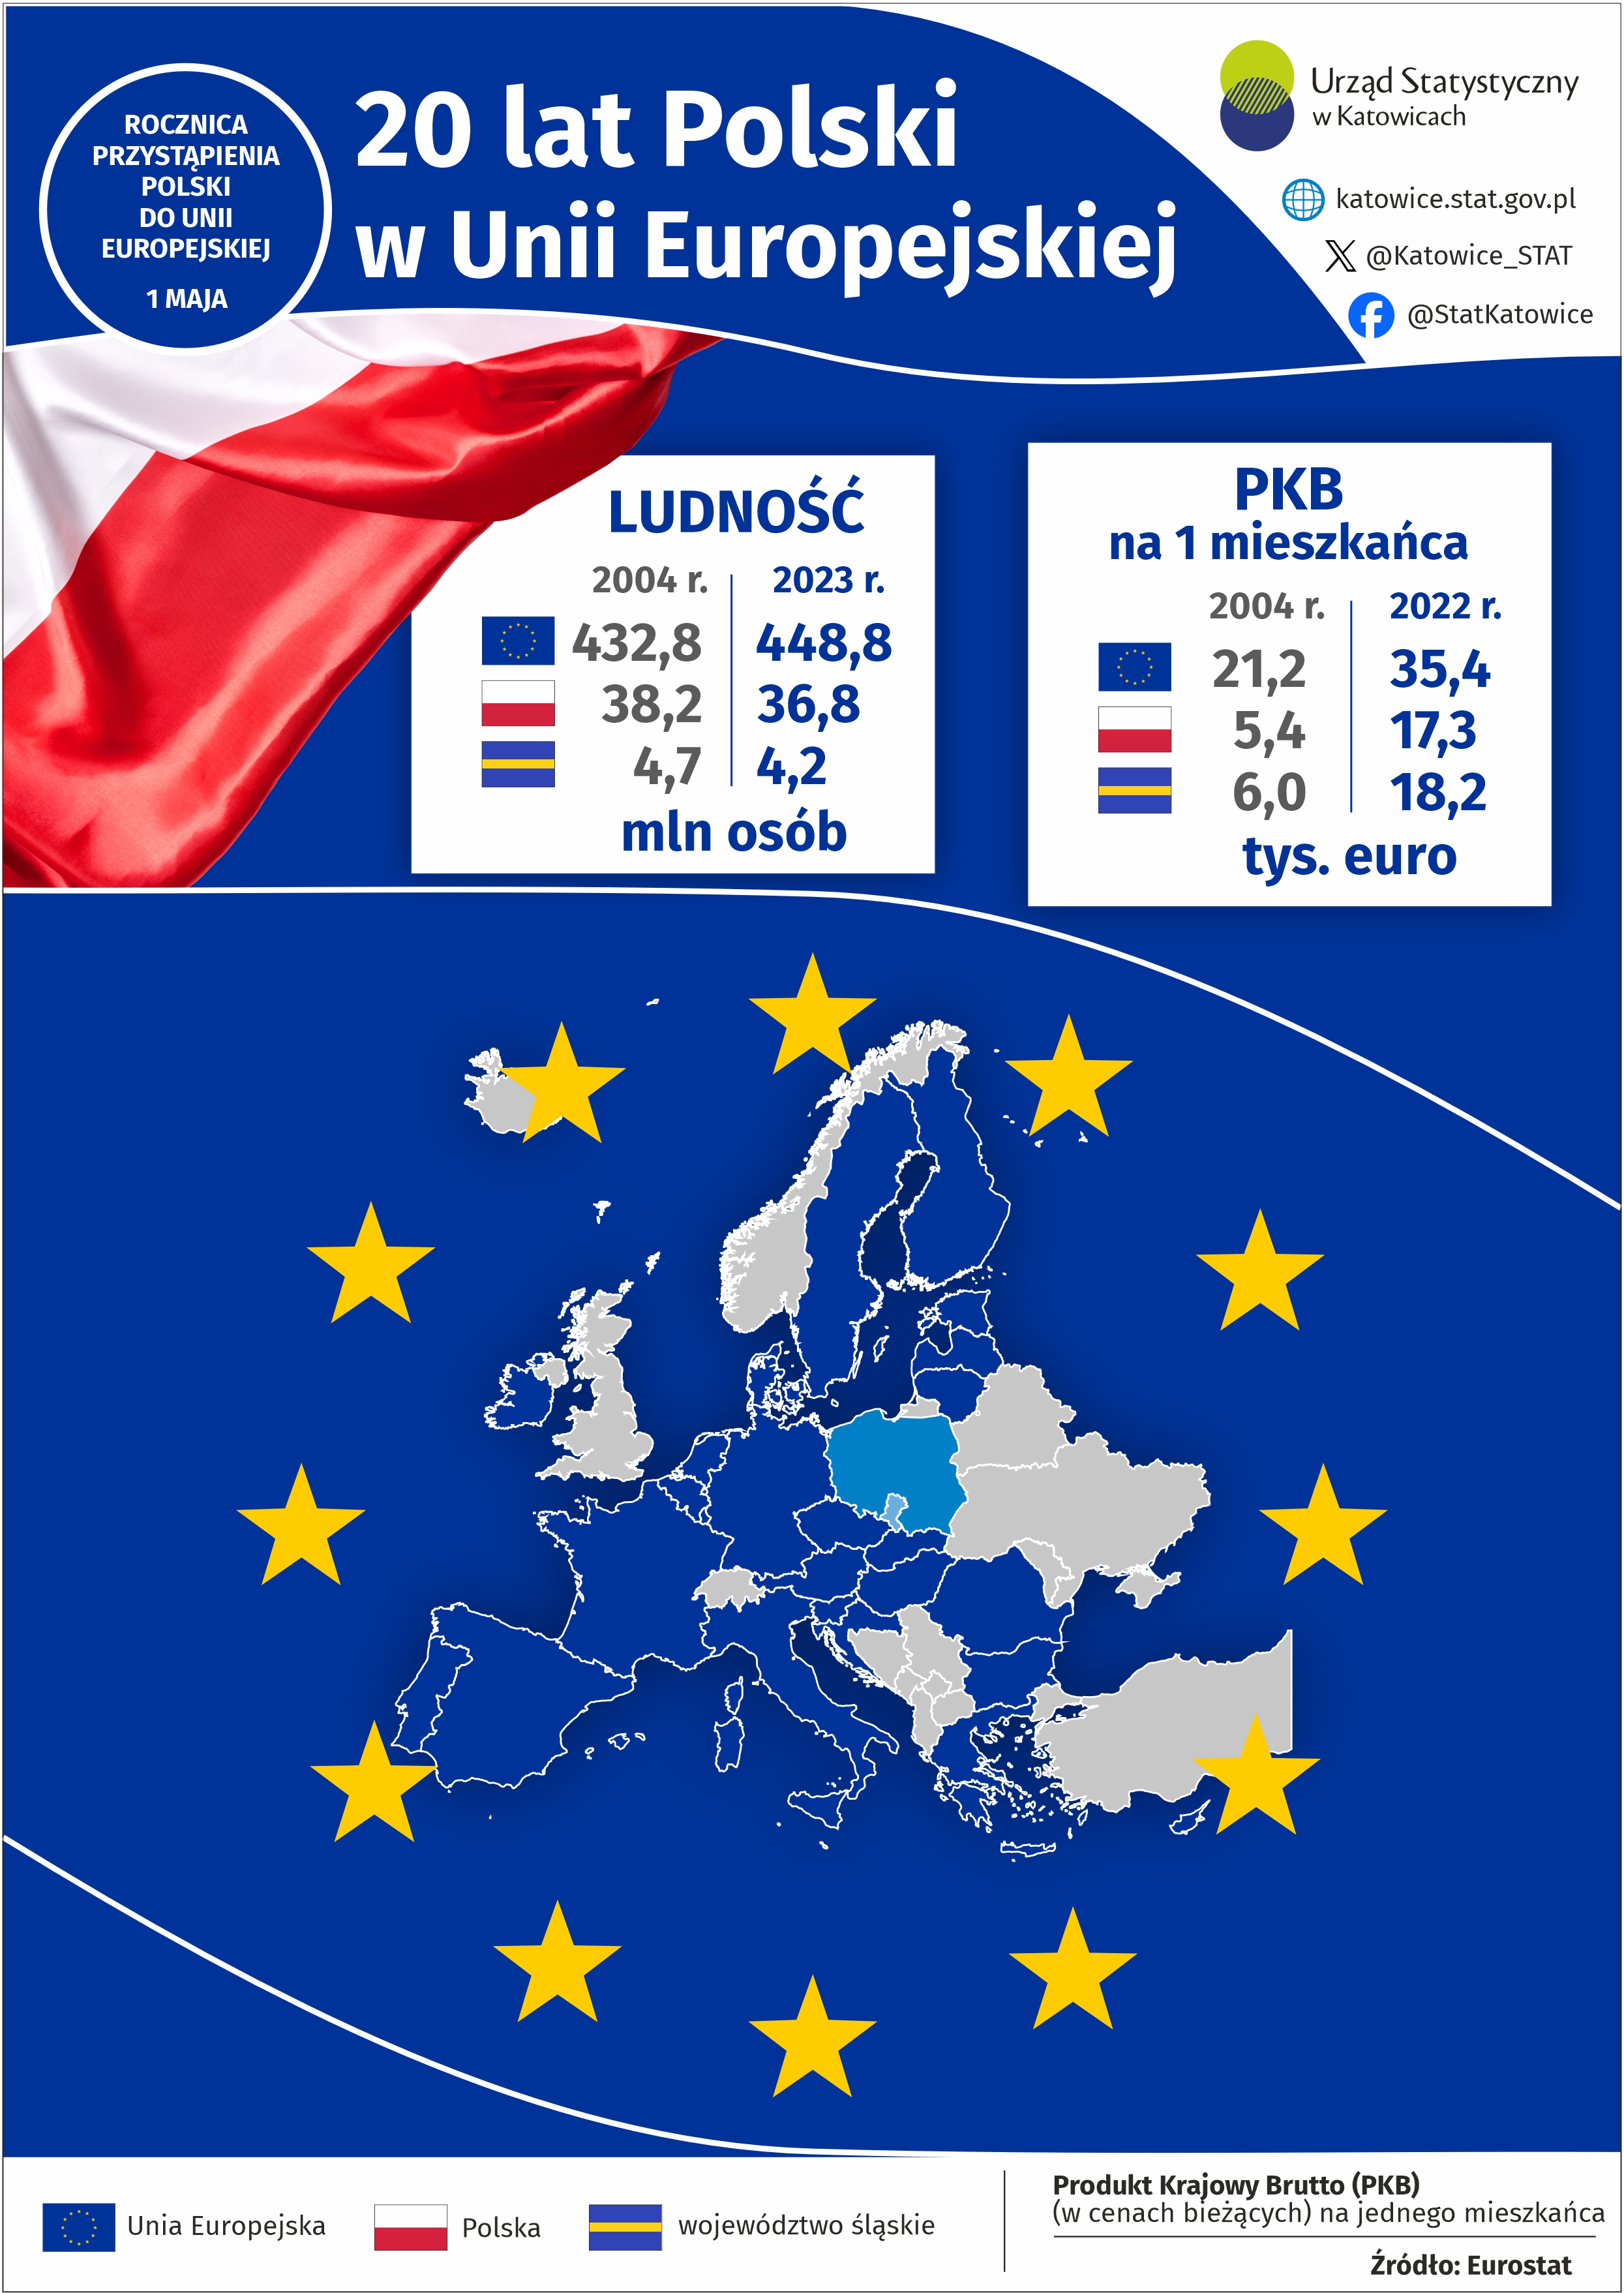 20 lat Polski w Unii Europejskiej (Infografika)